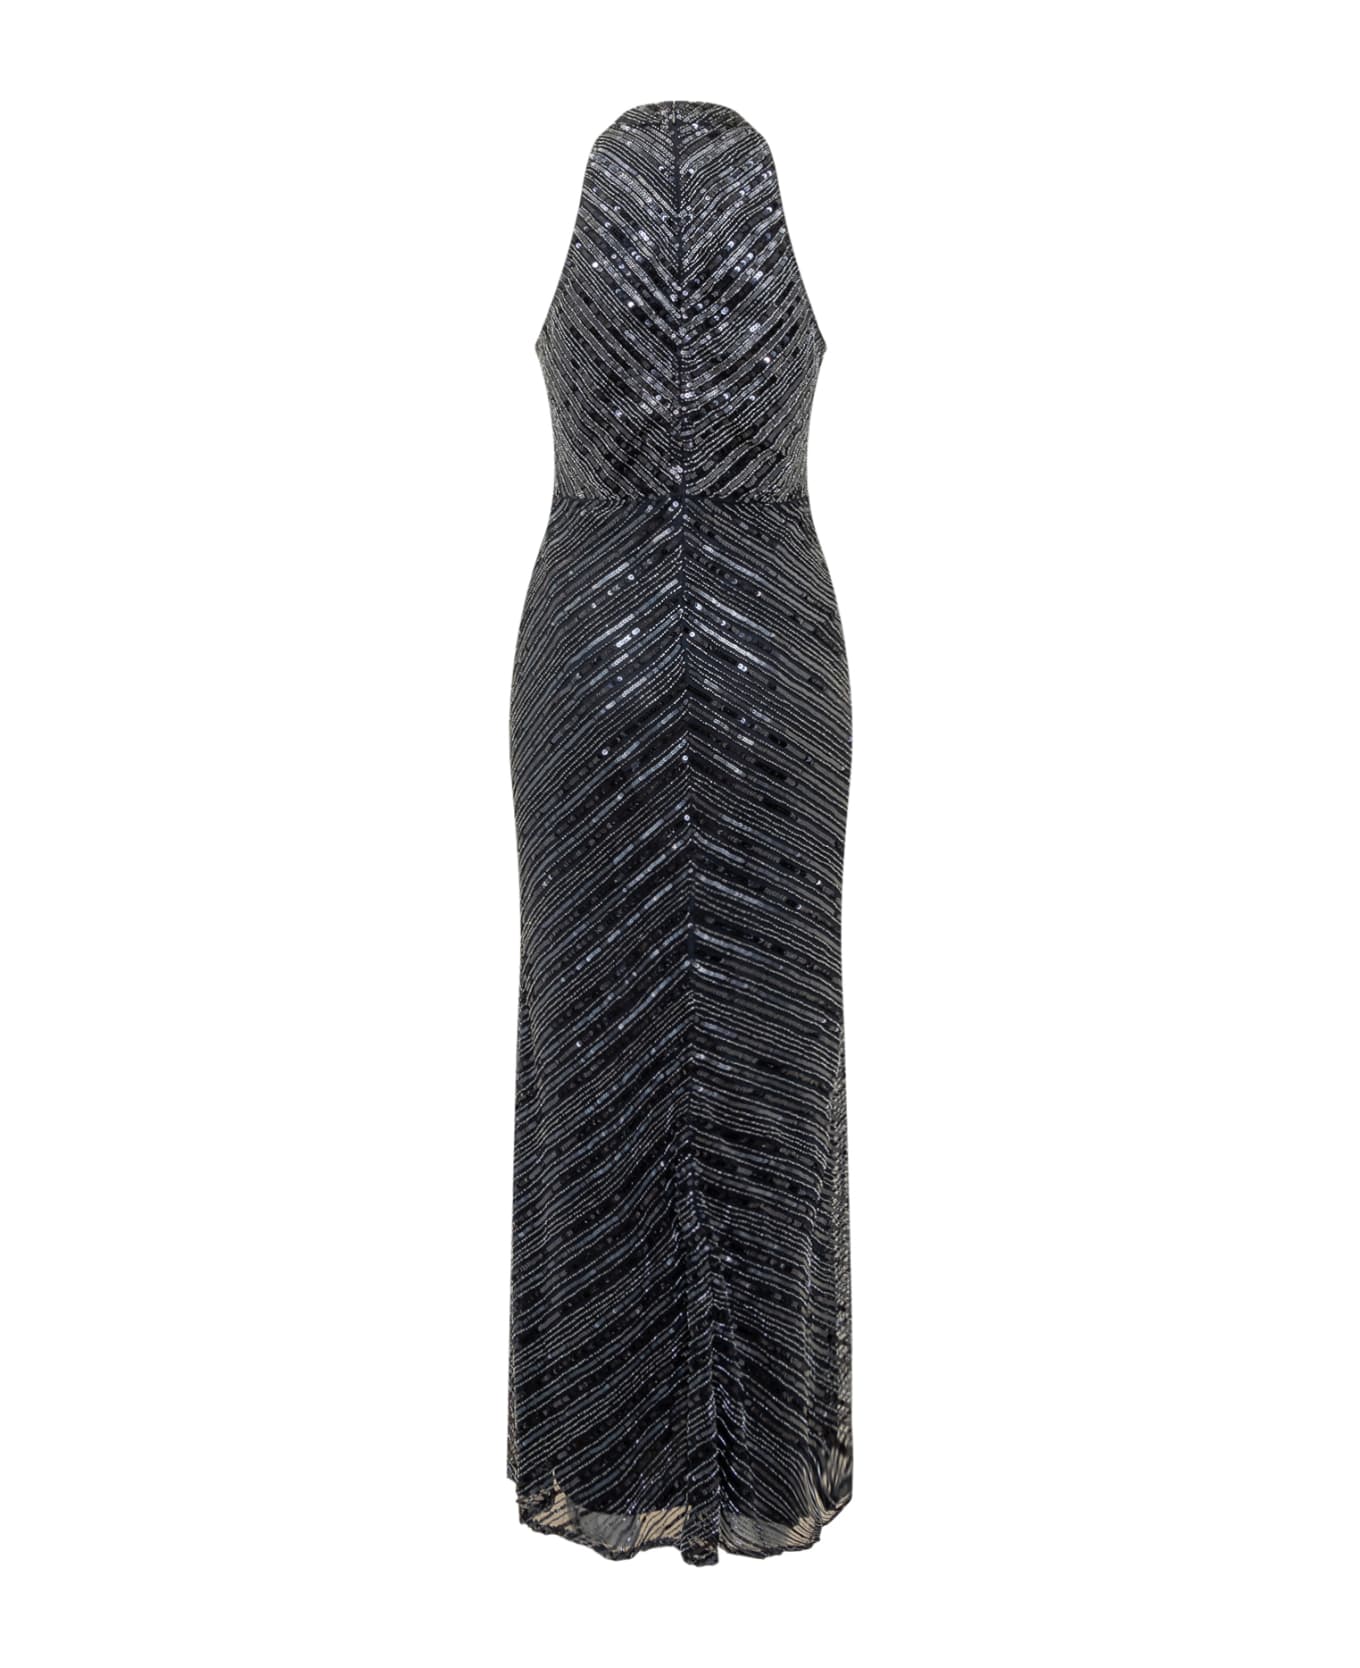 Ralph Lauren Emailene Gown Dress - LAUREN NAVY